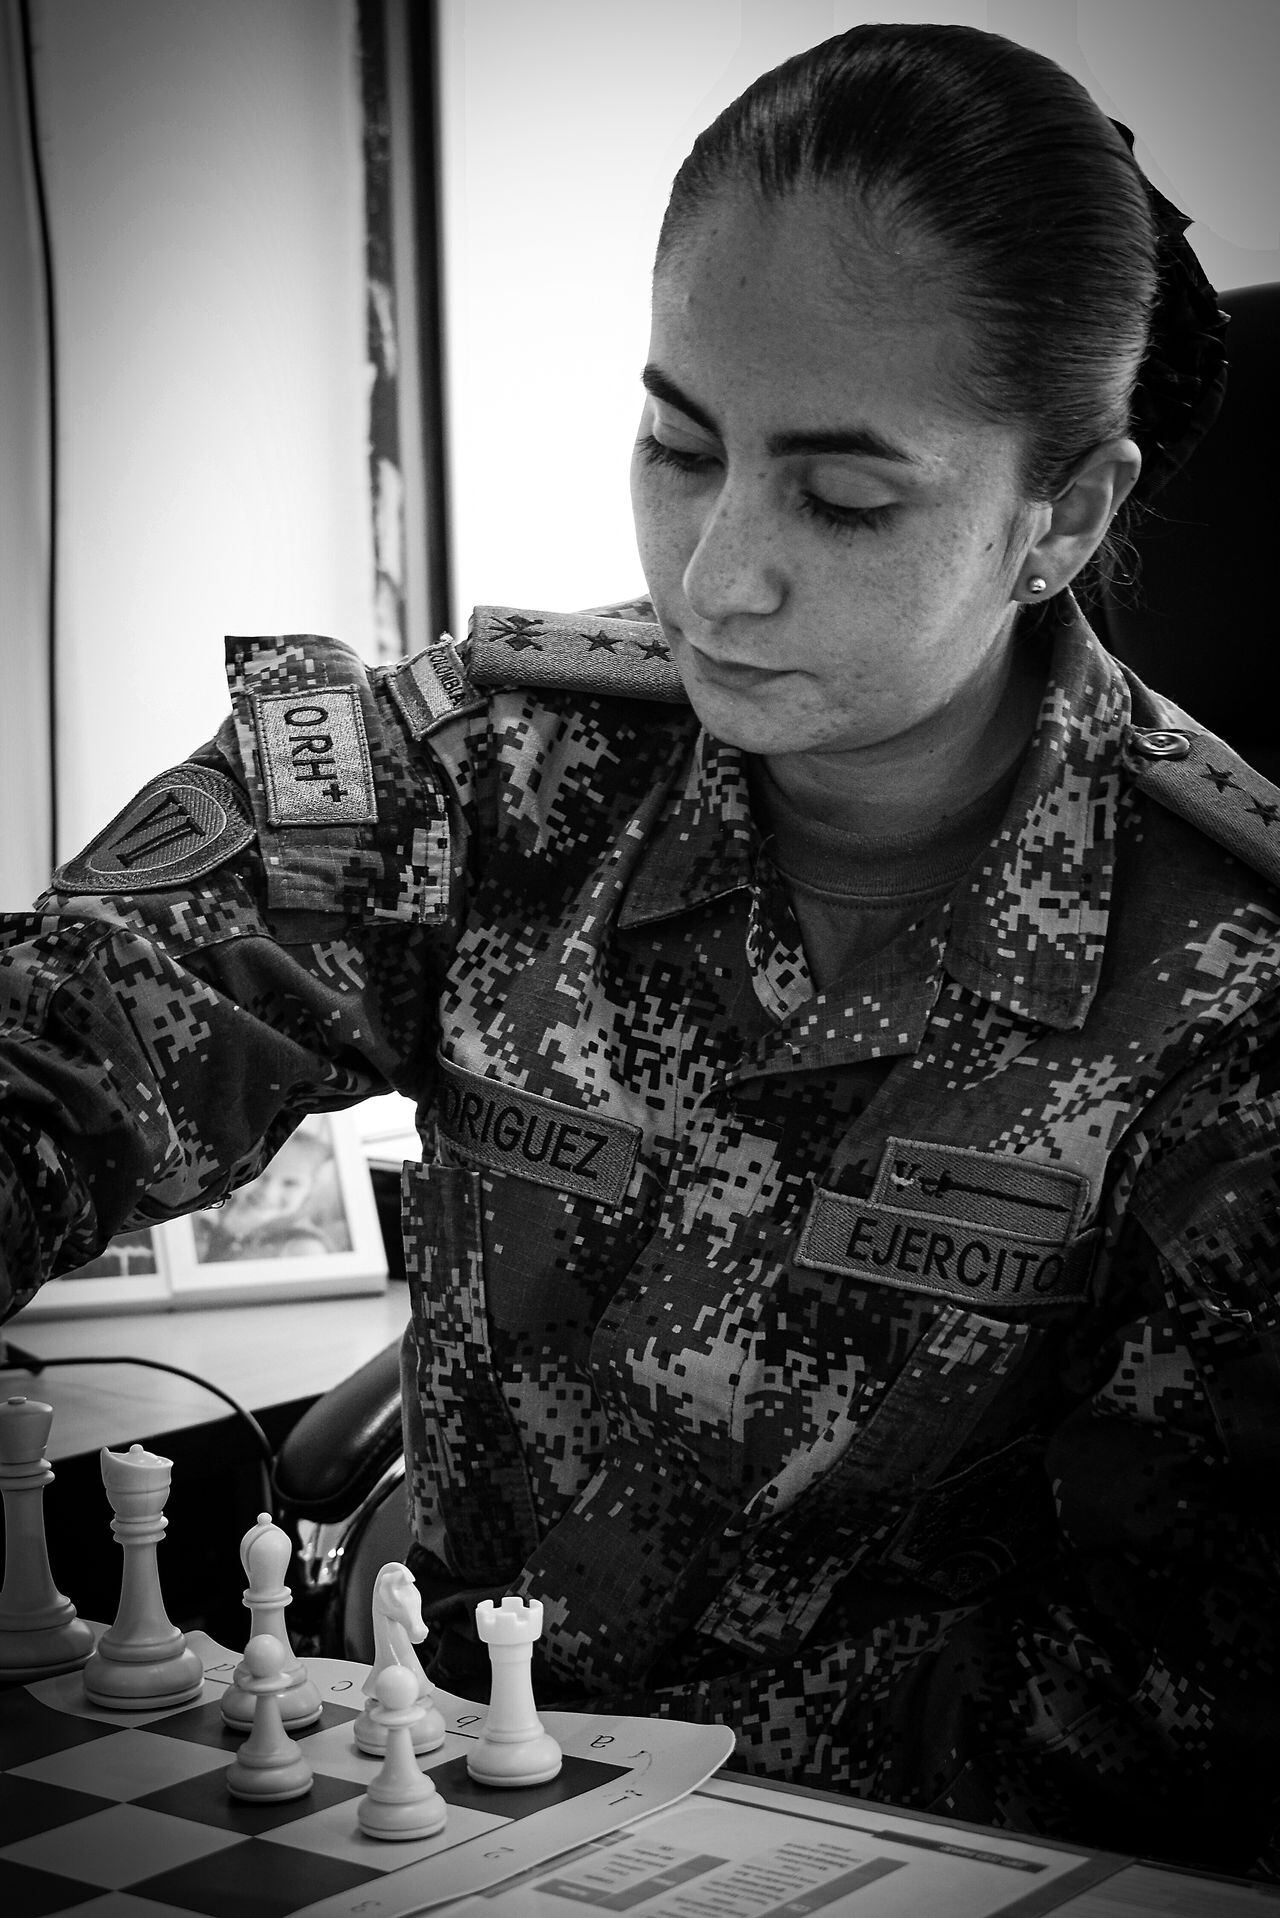 Teniente del Ejército, una mujer militar en mundial de ajedrez